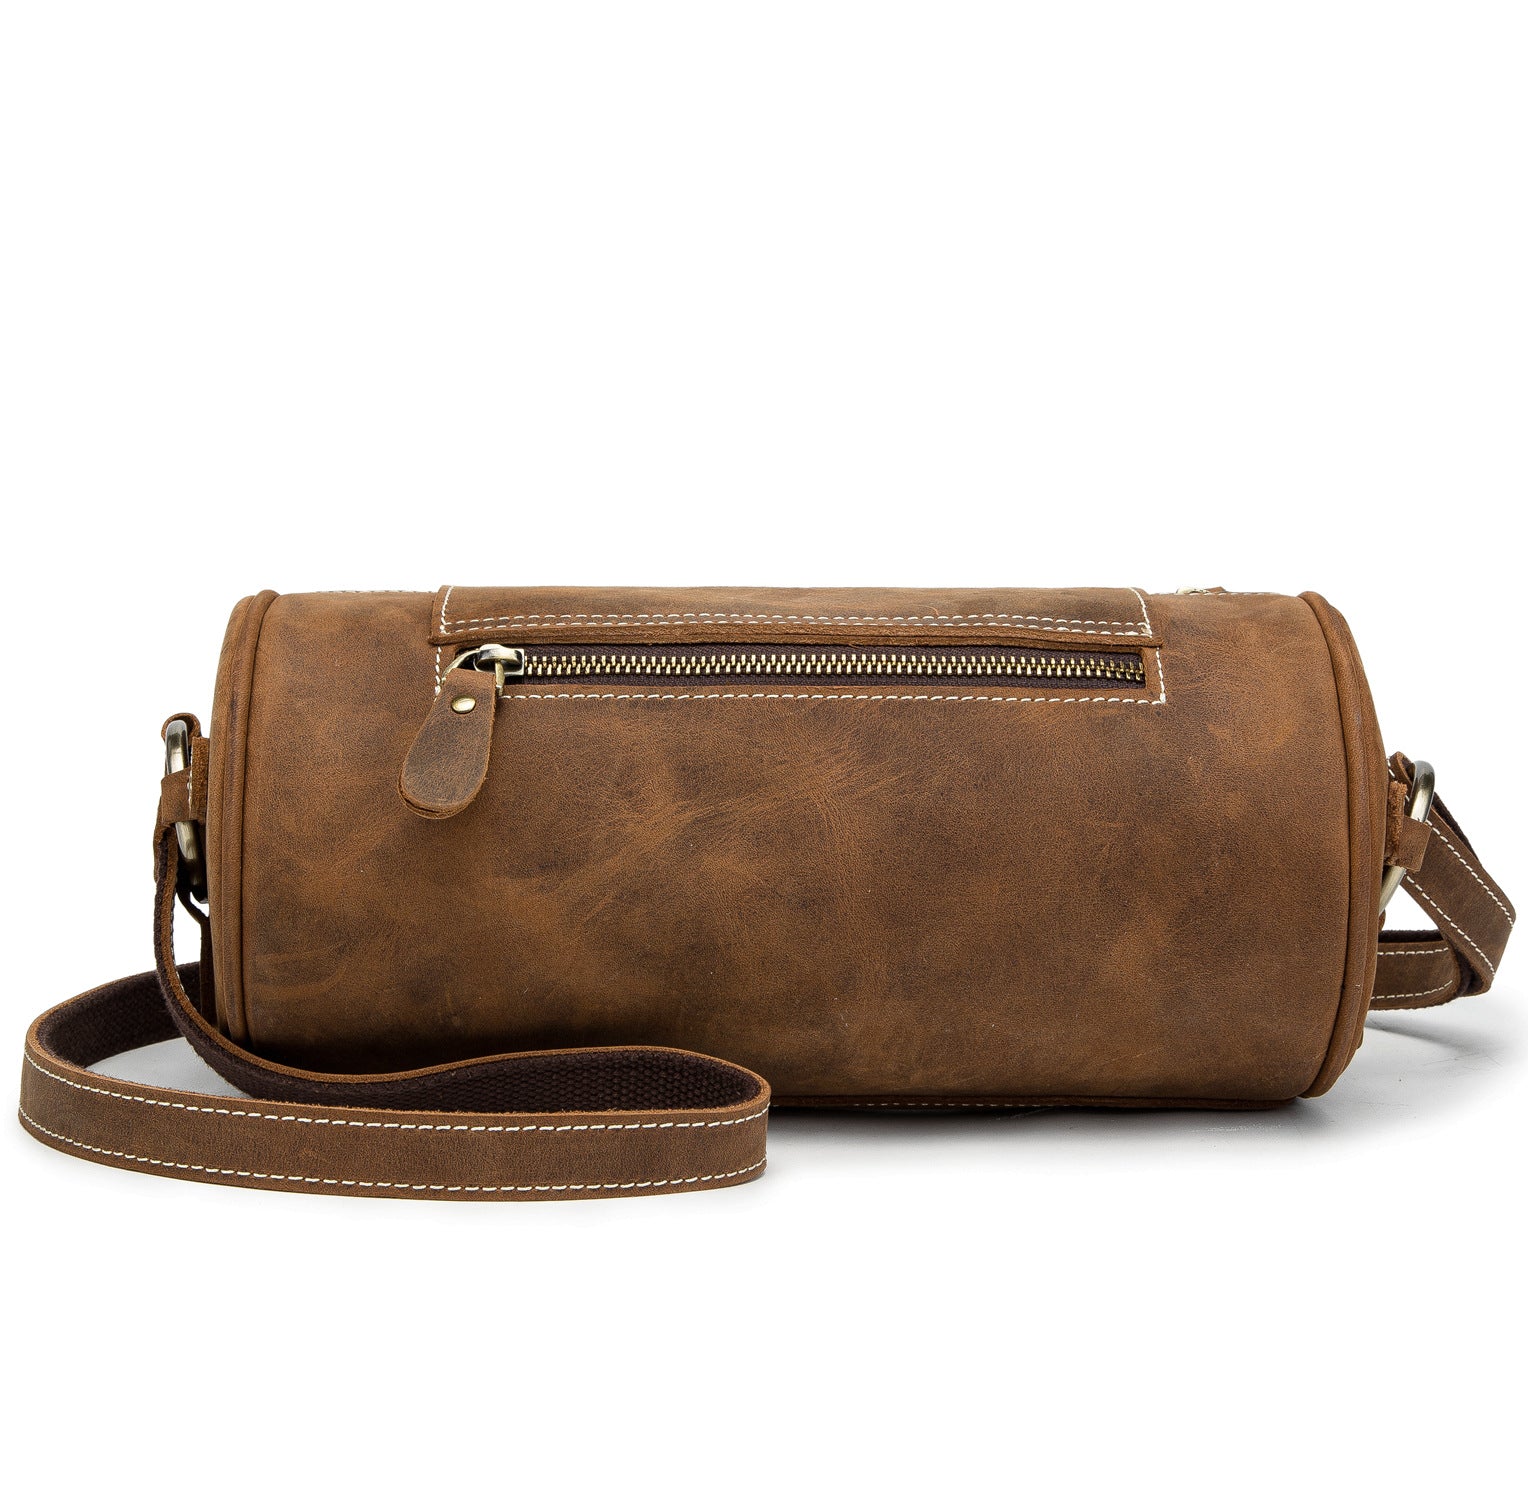 Fashion Samll Leather Barrel Bag XY001-Leatehr Barrel Bag-Dark Brown-Free Shipping Leatheretro